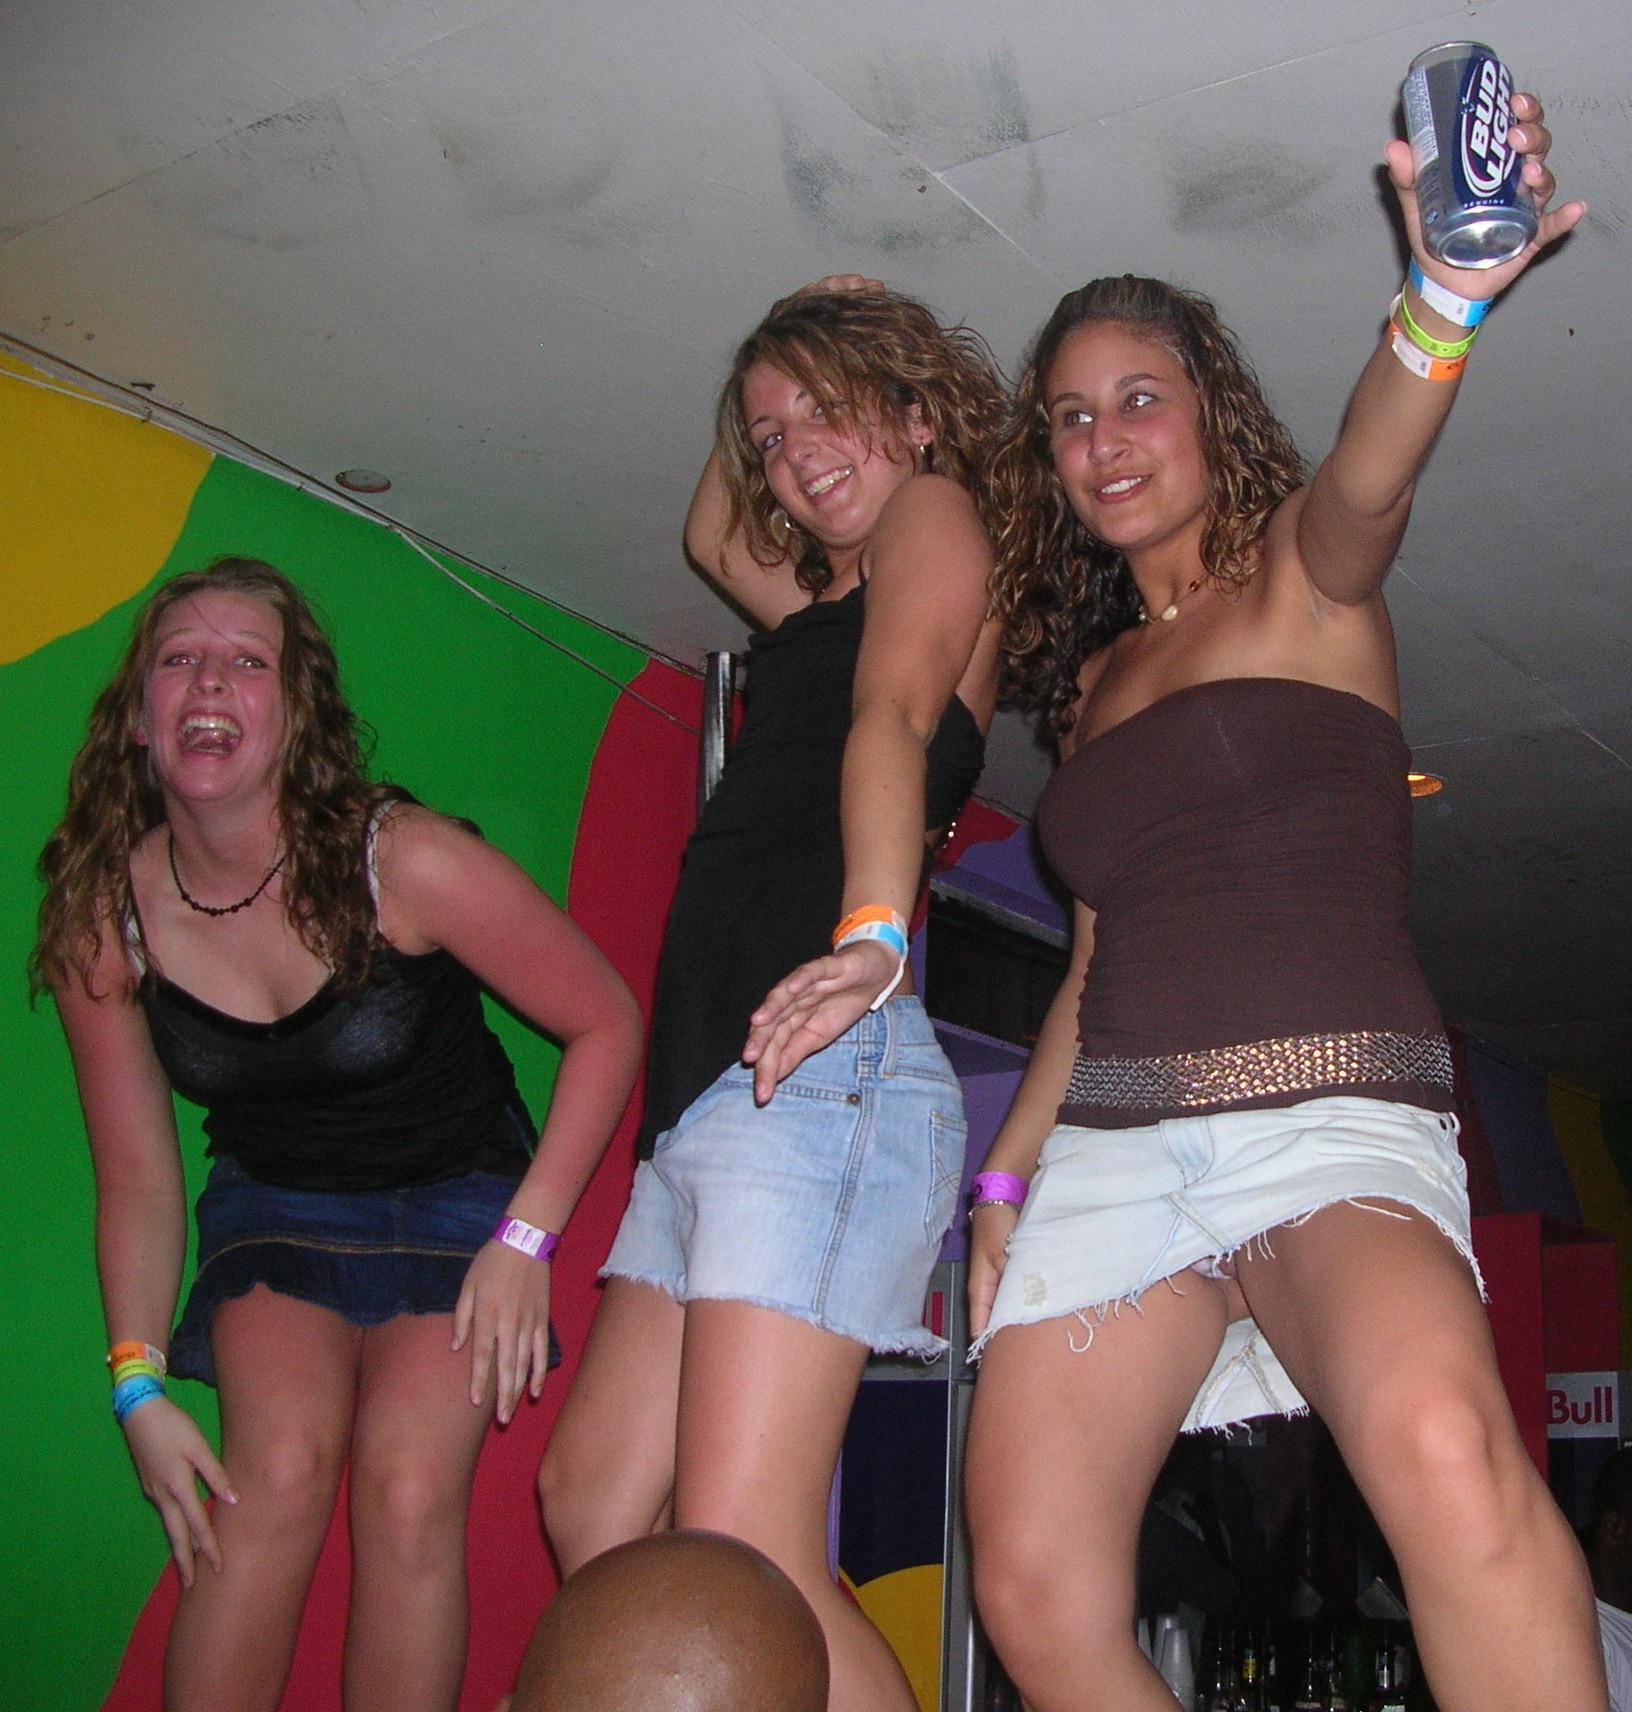 3 girls dancing naked